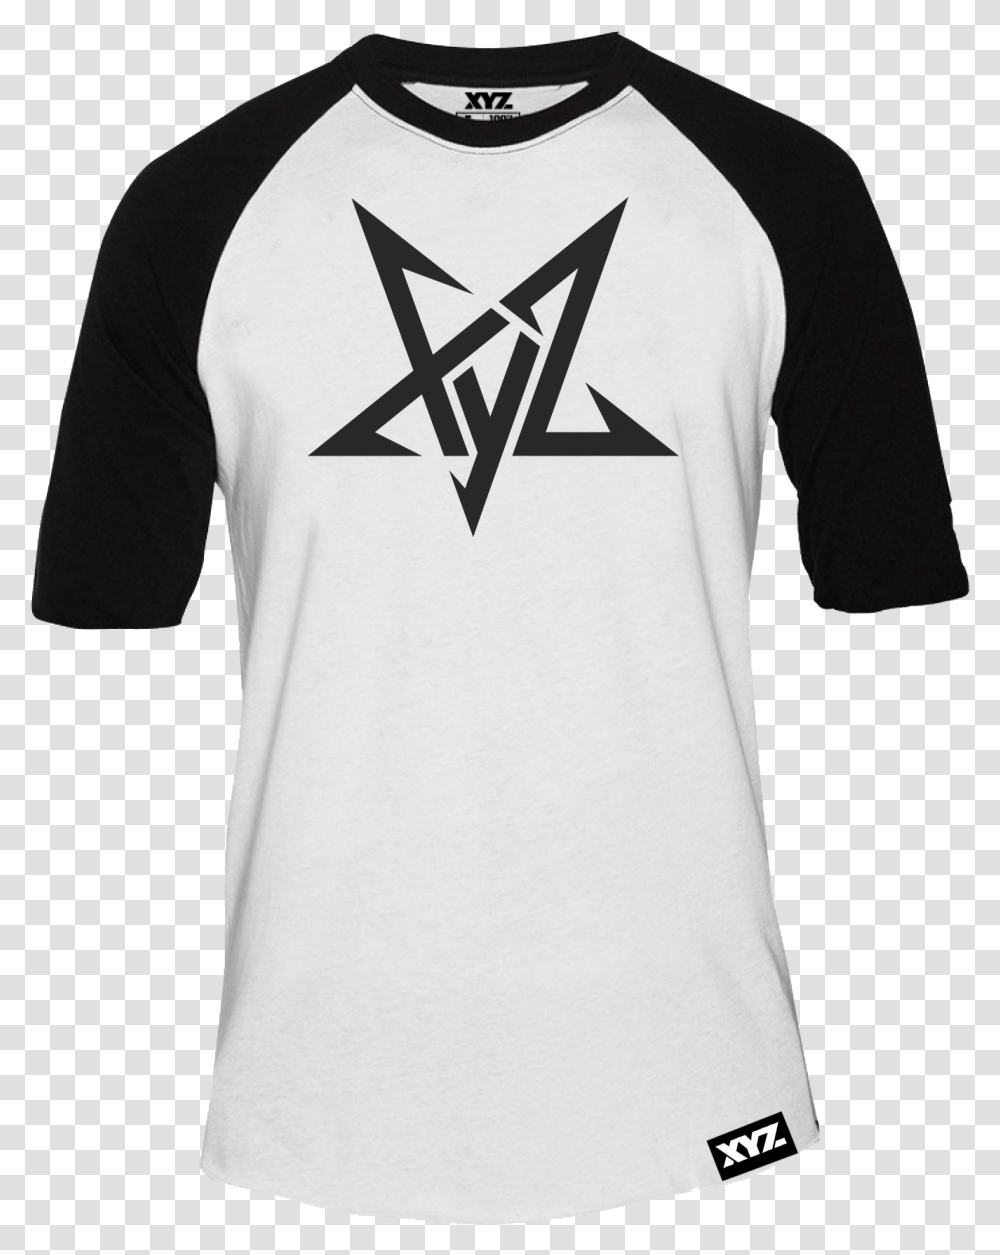 Pentagram Raglan Active Shirt, Apparel, Sleeve, Jersey Transparent Png